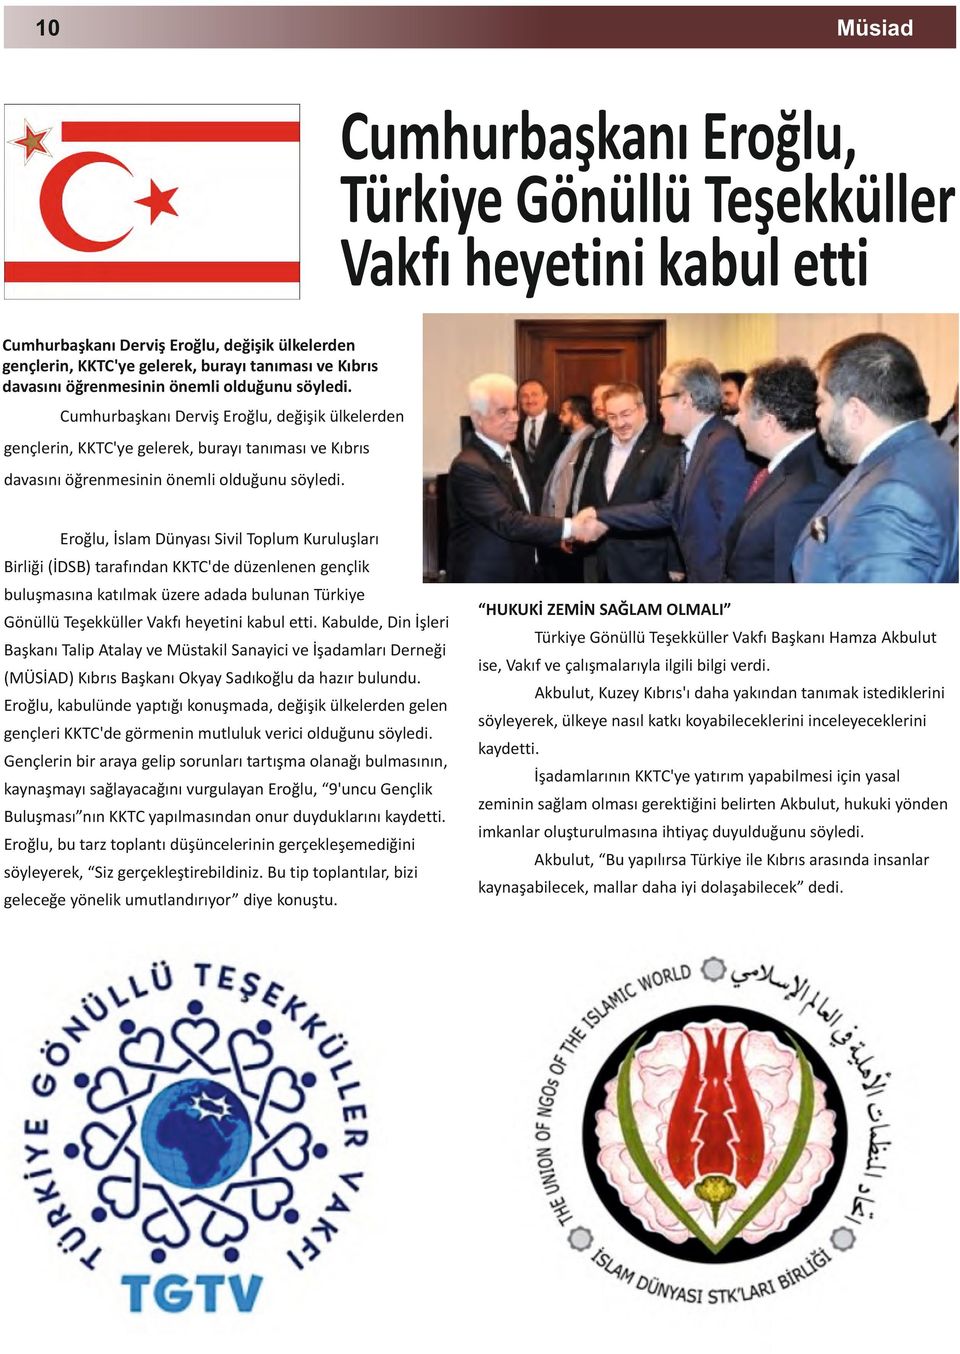 Eroğlu, İslam Dünyası Sivil Toplum Kuruluşları Birliği (İDSB) tarafından KKTC'de düzenlenen gençlik buluşmasına katılmak üzere adada bulunan Türkiye Gönüllü Teşekküller Vakfı heyetini kabul etti.